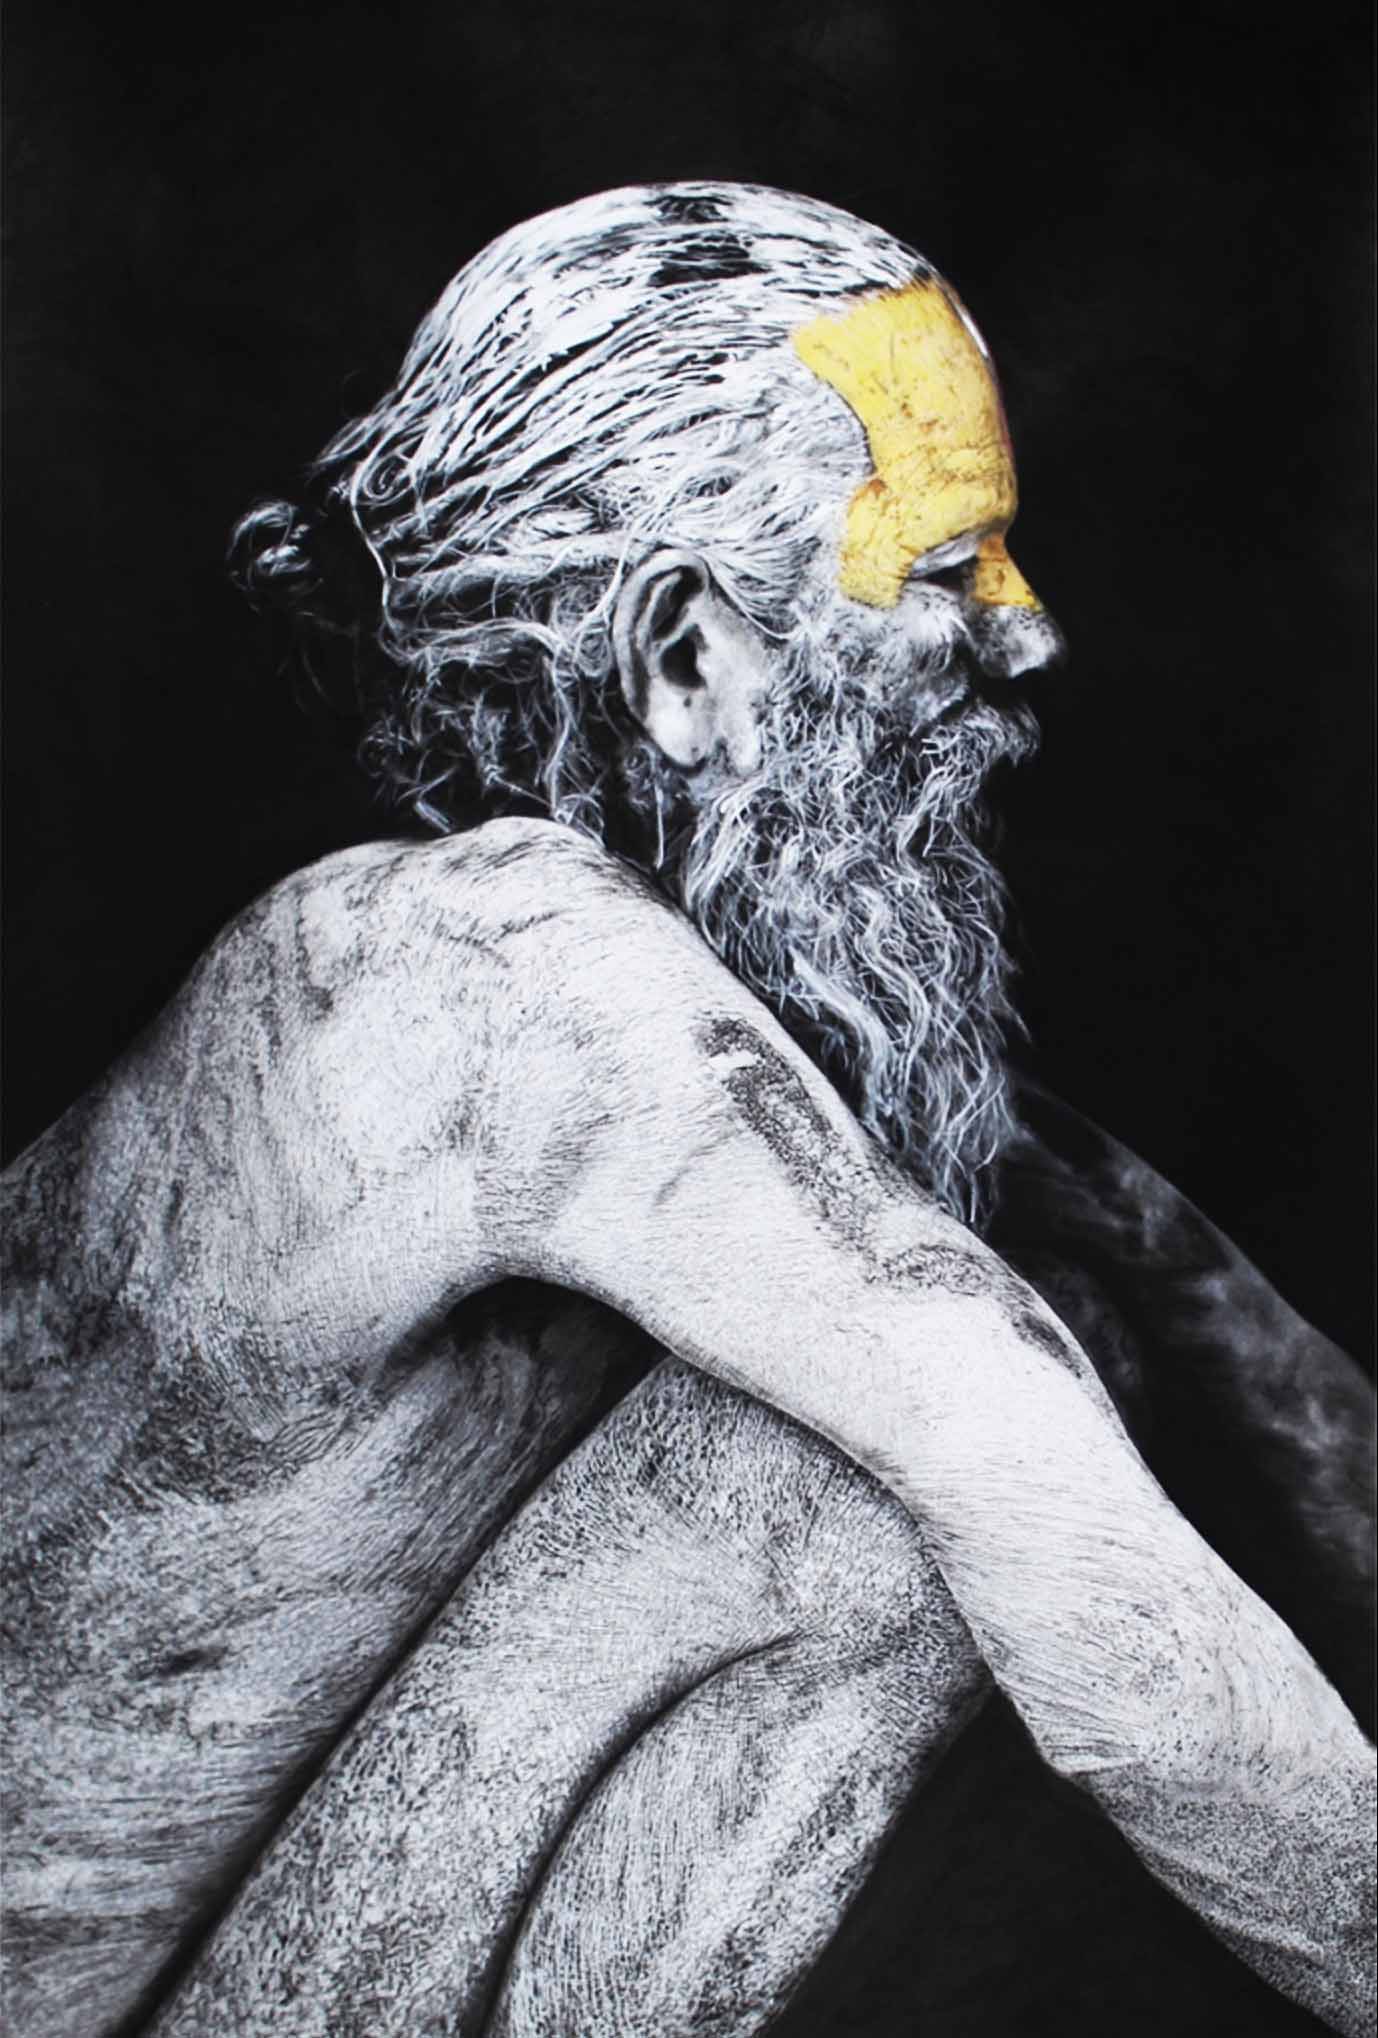 "Sâdhu" -Dessin à la pierre noire, fusain et aquarelle avec rehauts de blanc sur papier Canson - 1.20 X 0.80 - D’après une photographie de Mario GERTH - Prix sur demande -